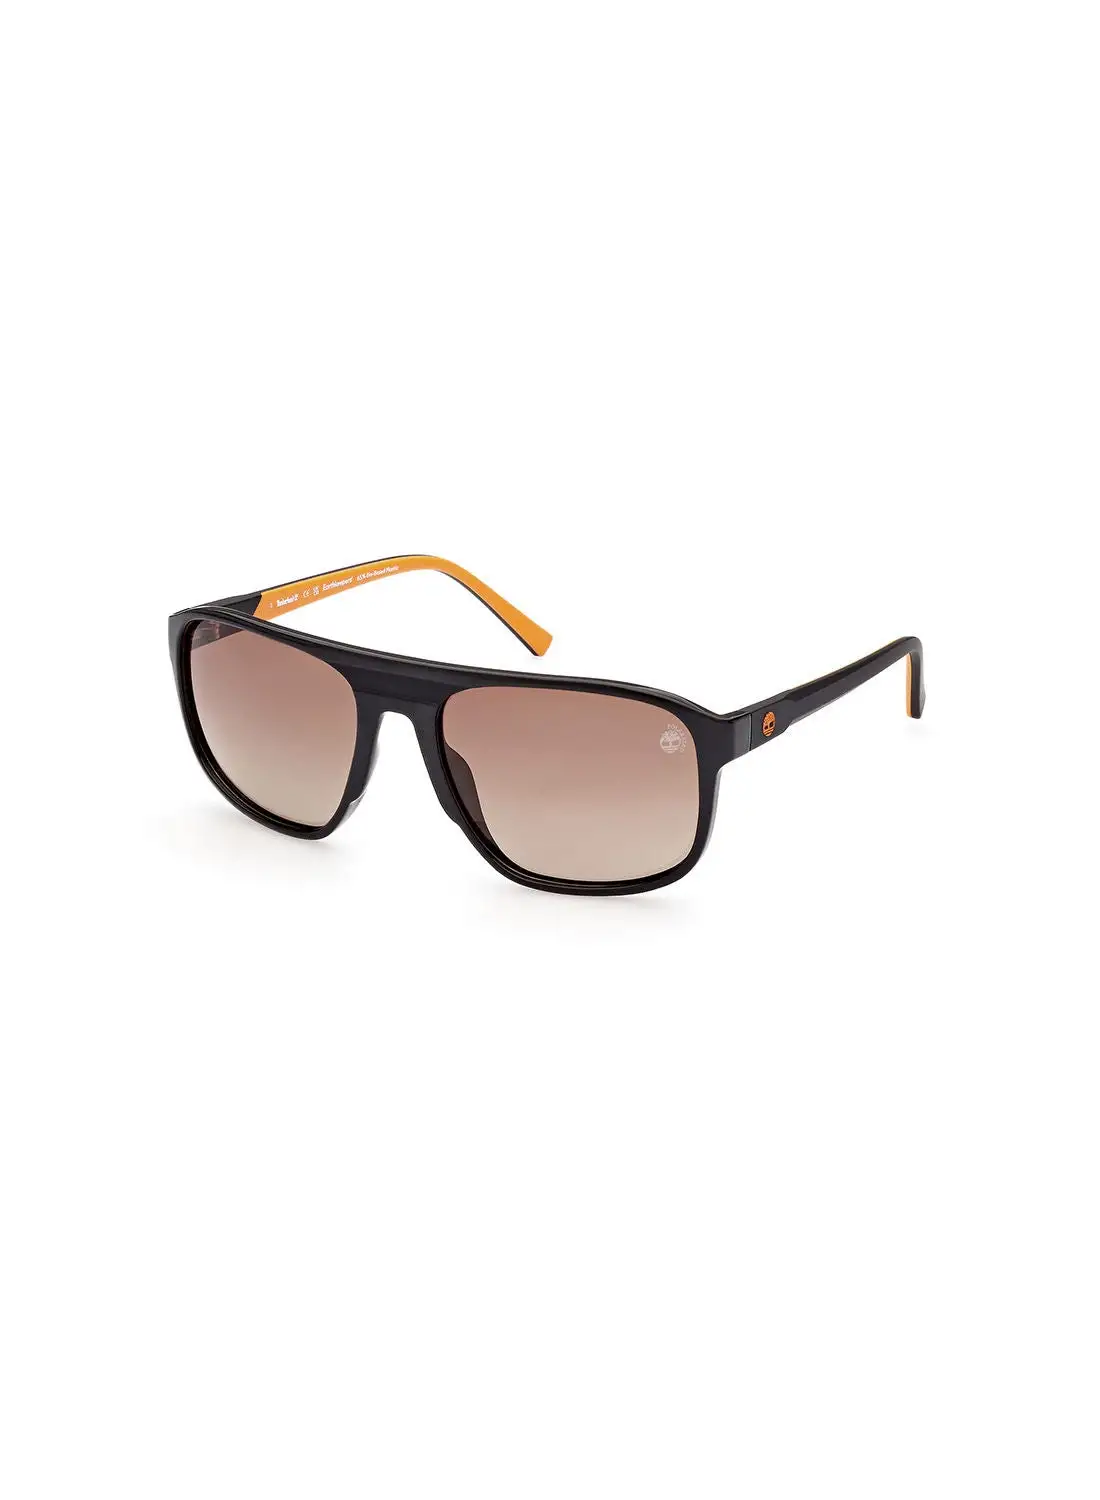 Timberland Men's Polarized Pilot Sunglasses - TB927801H60 - Lens Size: 60 Mm